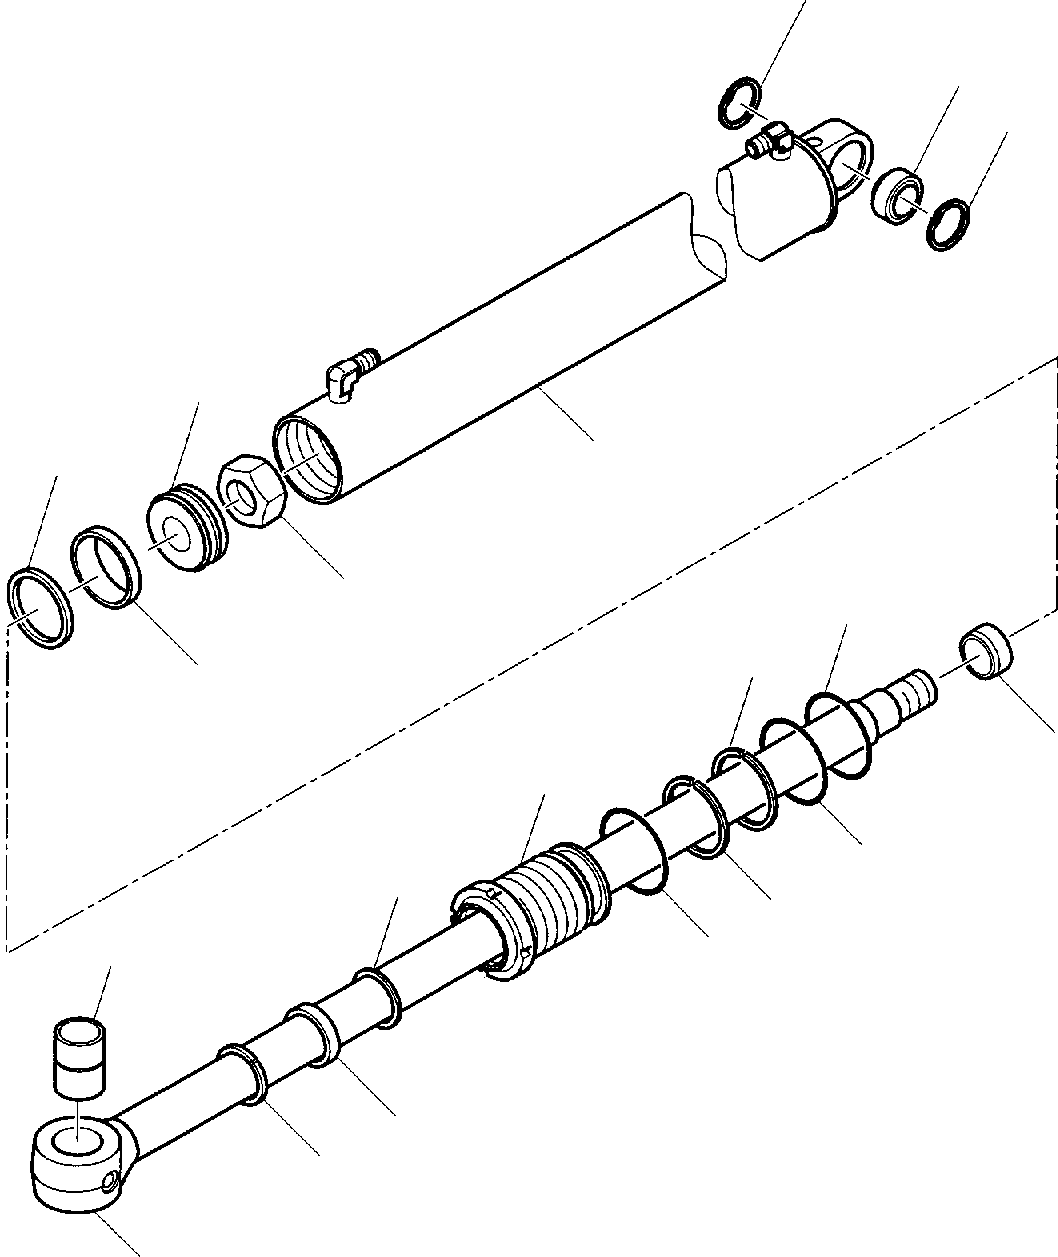 Part 27. ARM CYLINDER (FOR SIDE DIGGING BOOM) [7215]